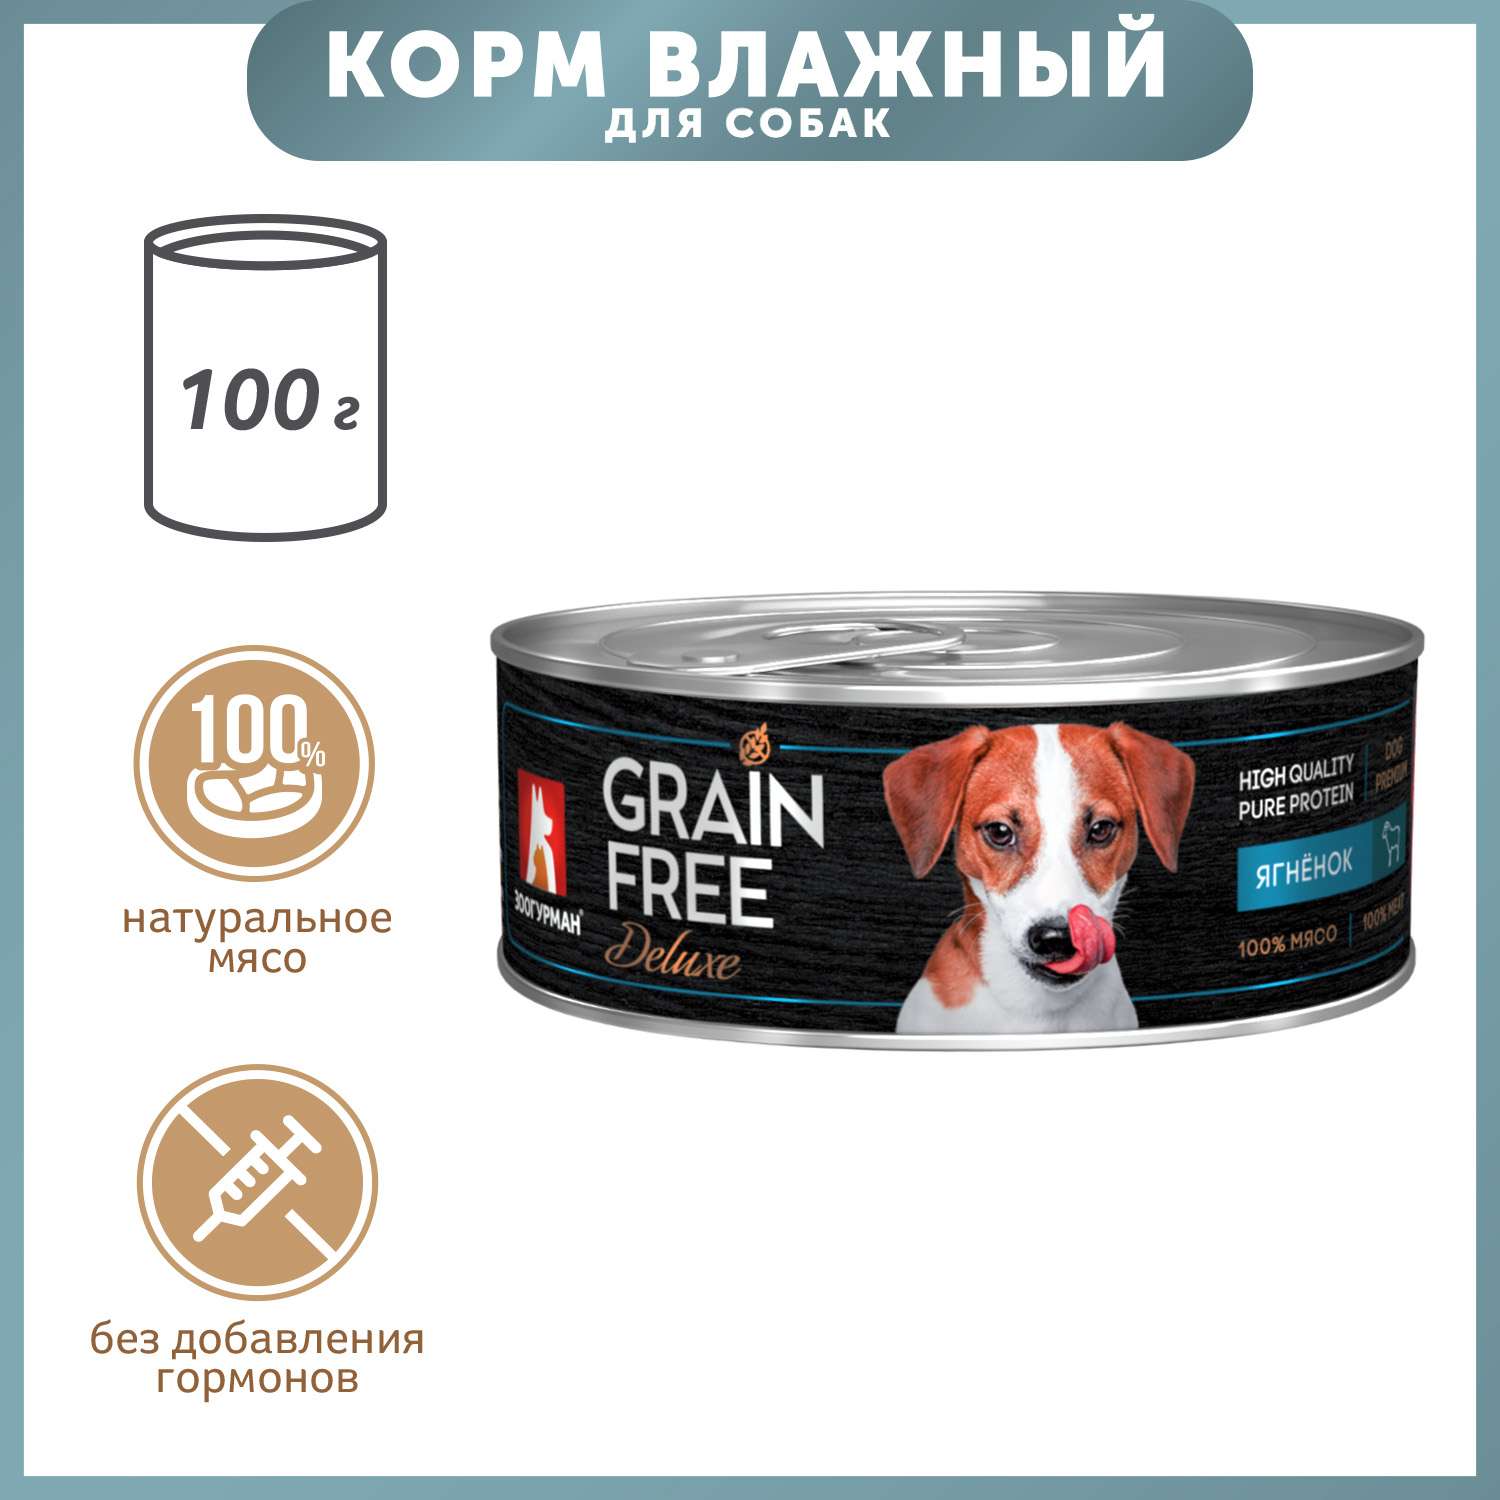 Корм для собак Зоогурман 100г Grain free ягненок консервированный - фото 1